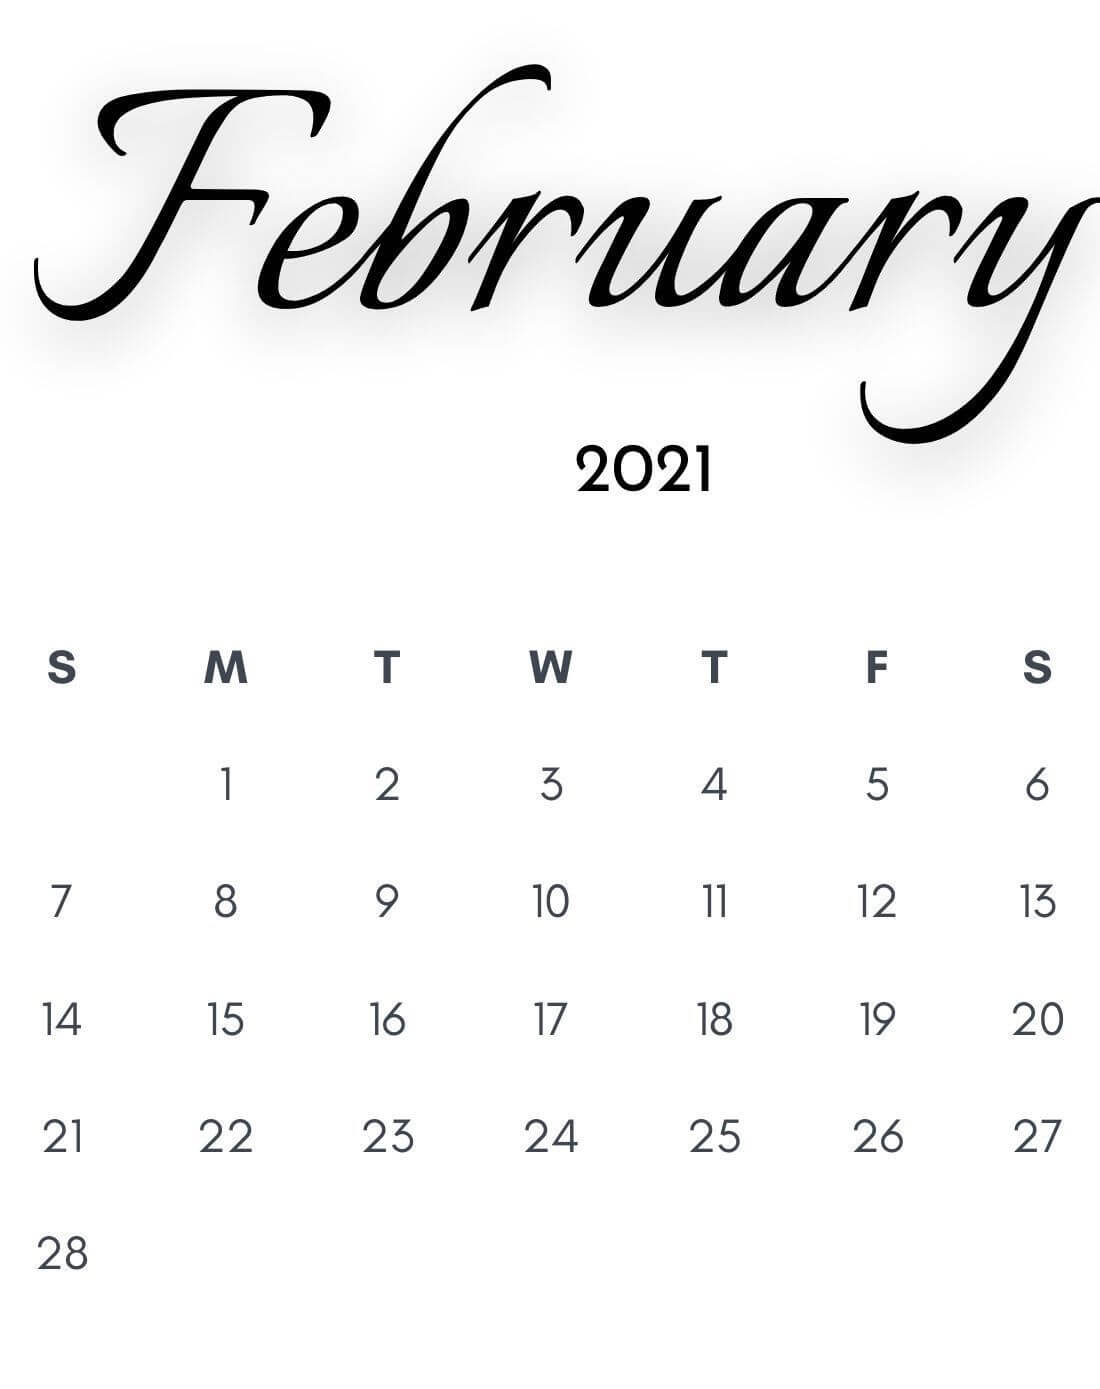 February 2021 Desktop Calendar Wallpaper